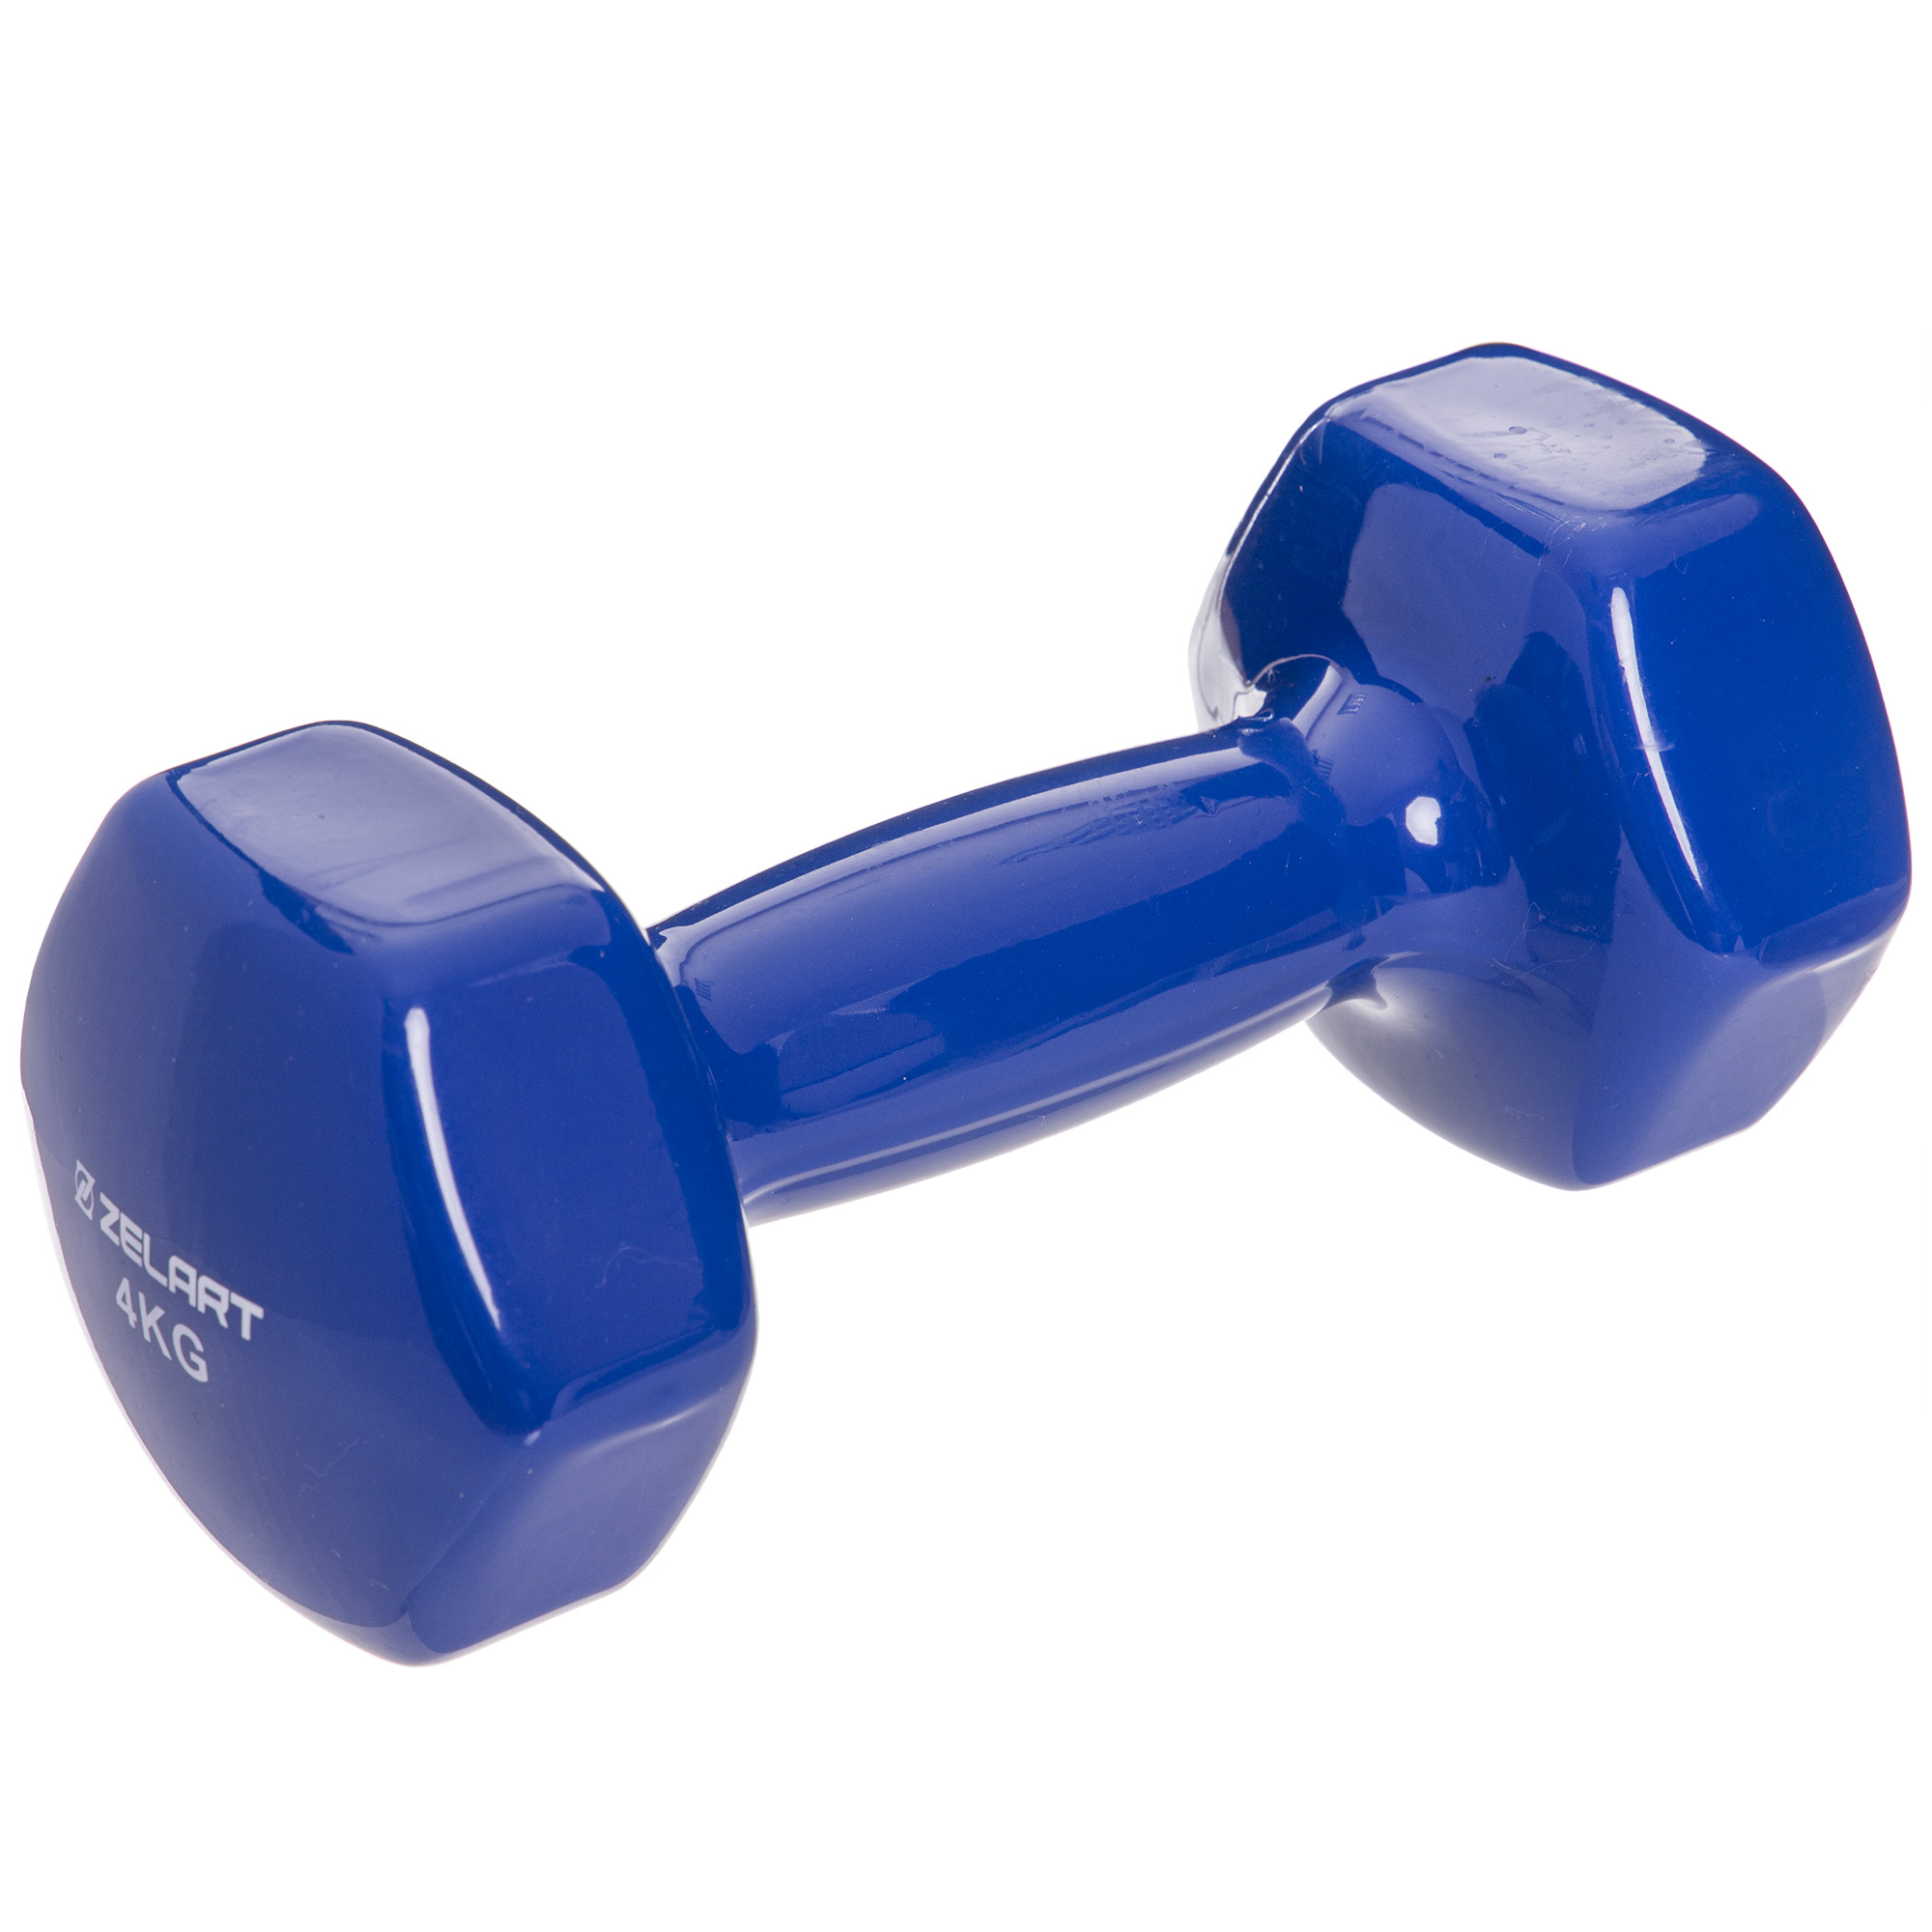 Гантели для фитнеса с виниловым покрытием Zelart TA-2777-4 Синий 4 кг 1шт